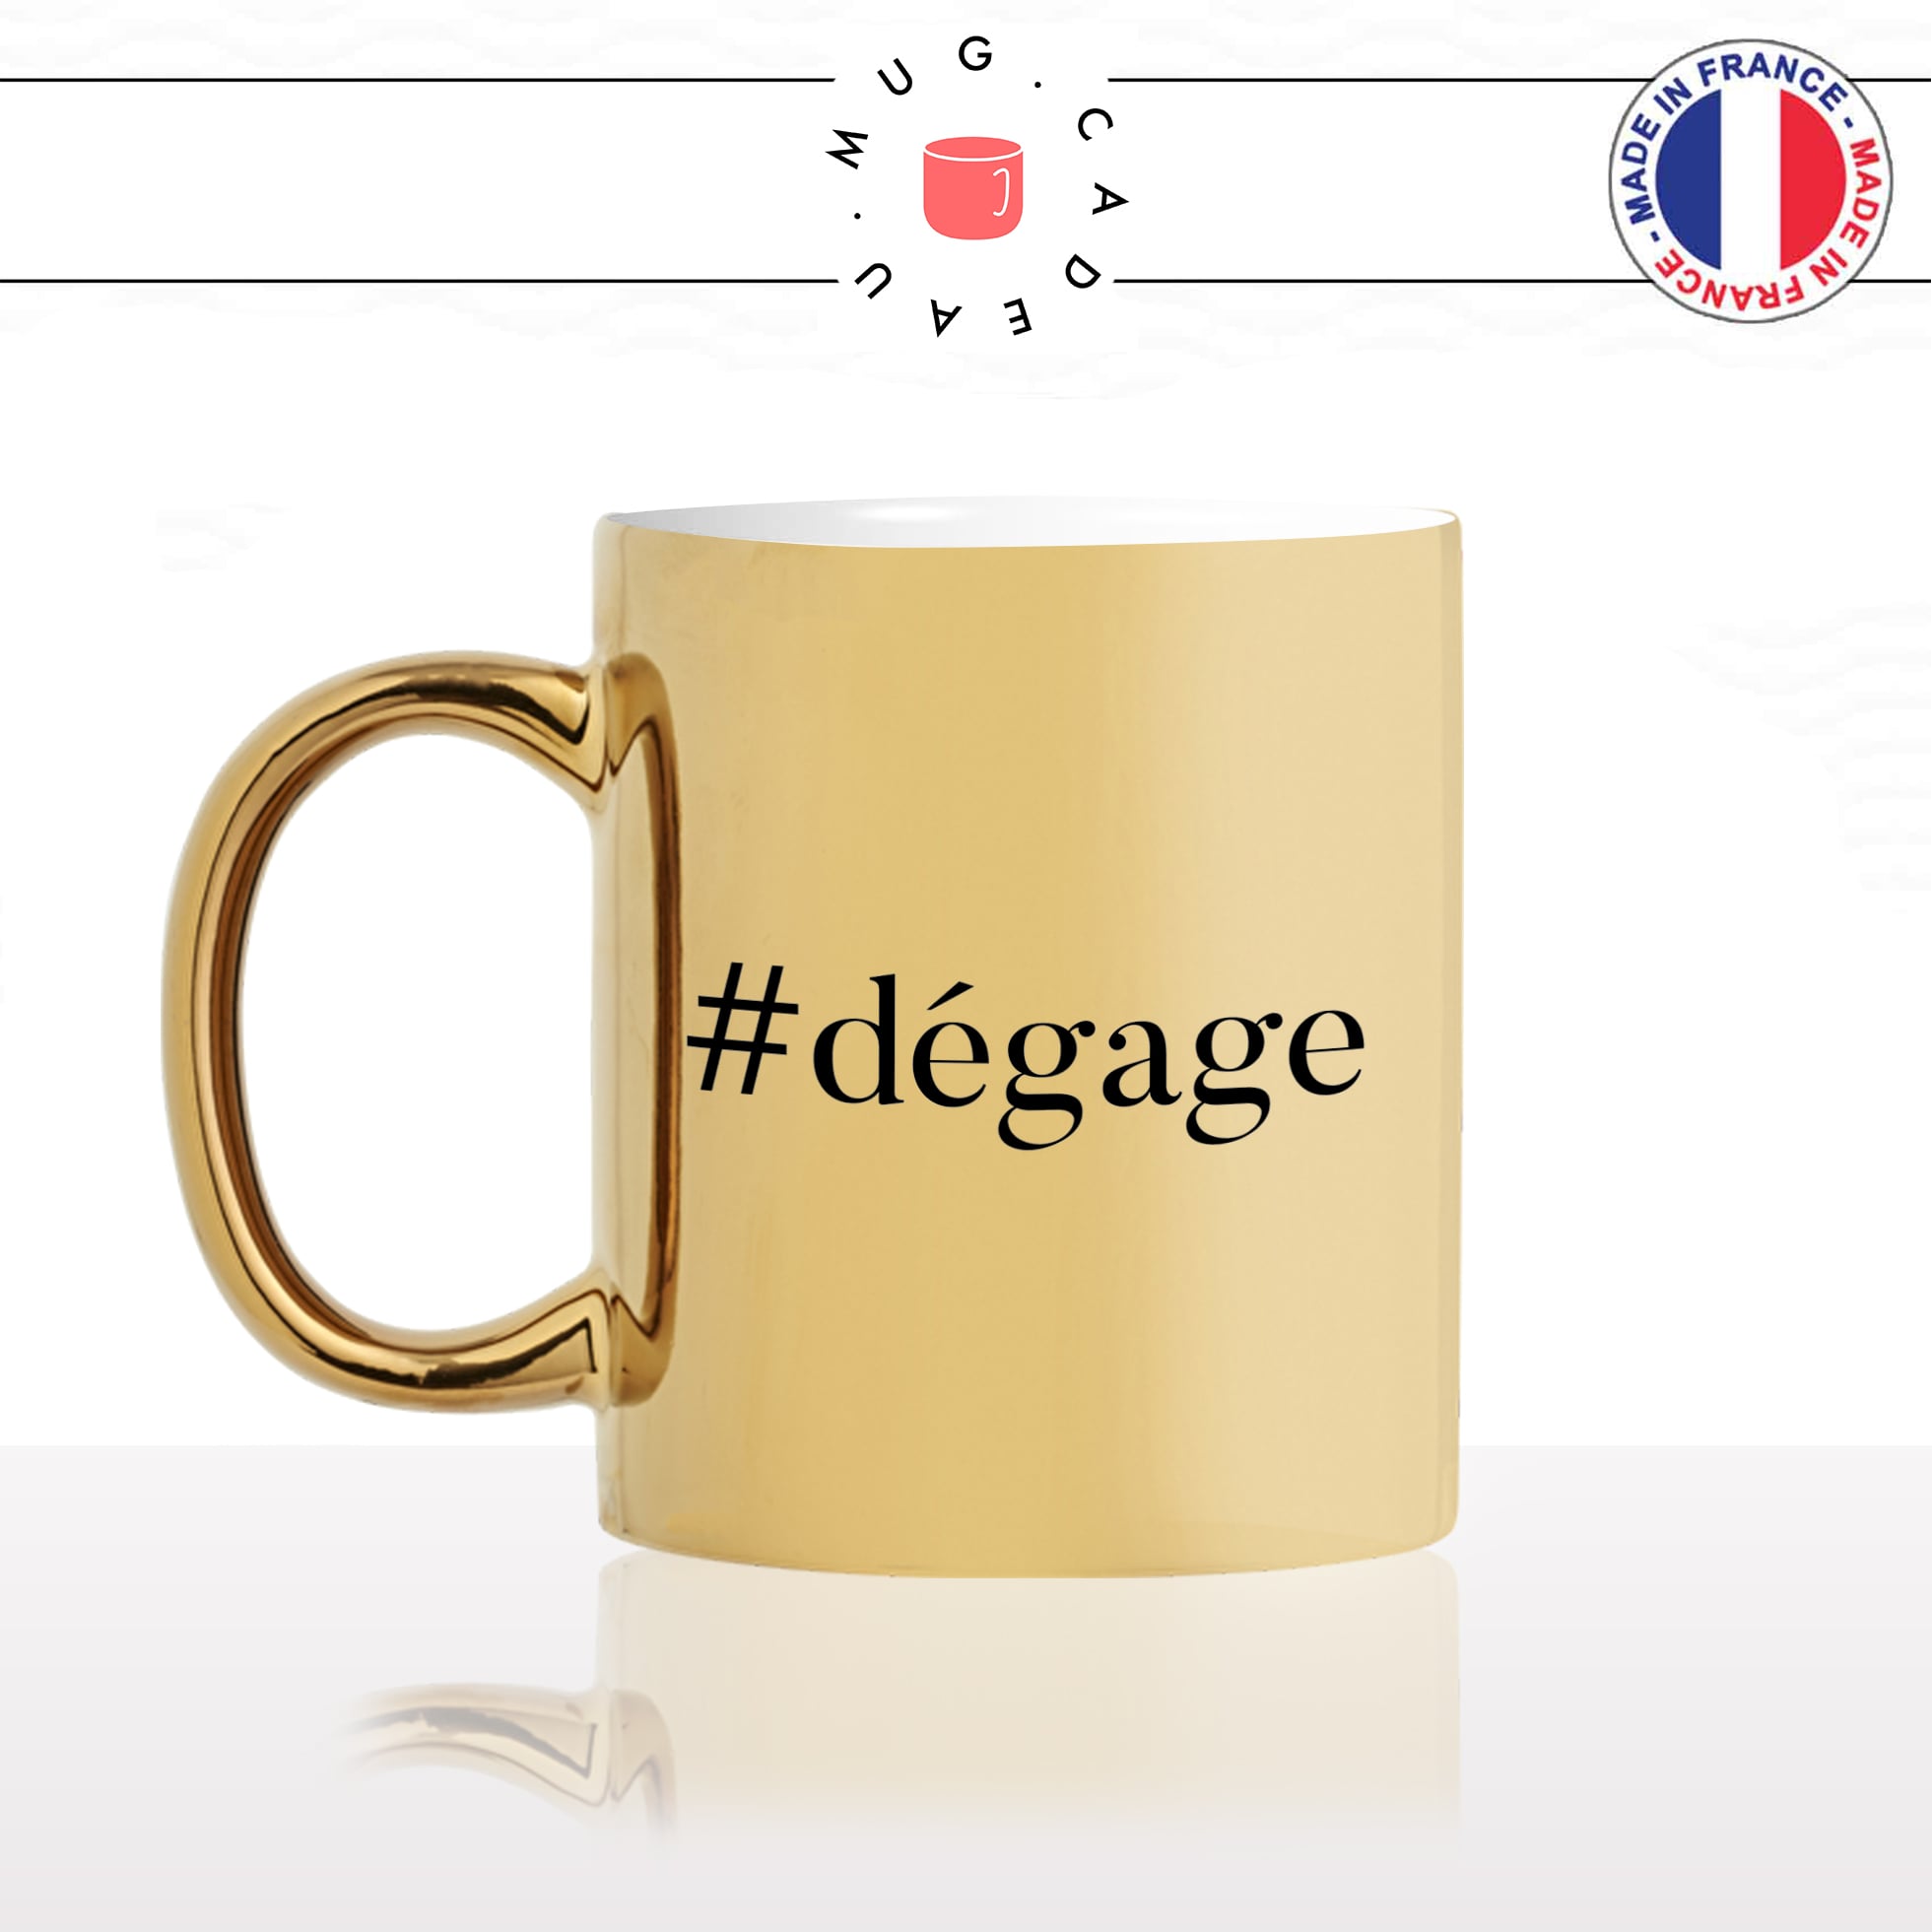 mug-tasse-doré-or-gold-hashtag-dégage-femme-homme-bureau-travail-collegue-anti-social-cool-humour-fun-idée-cadeau-personnalisé-café-thé-min